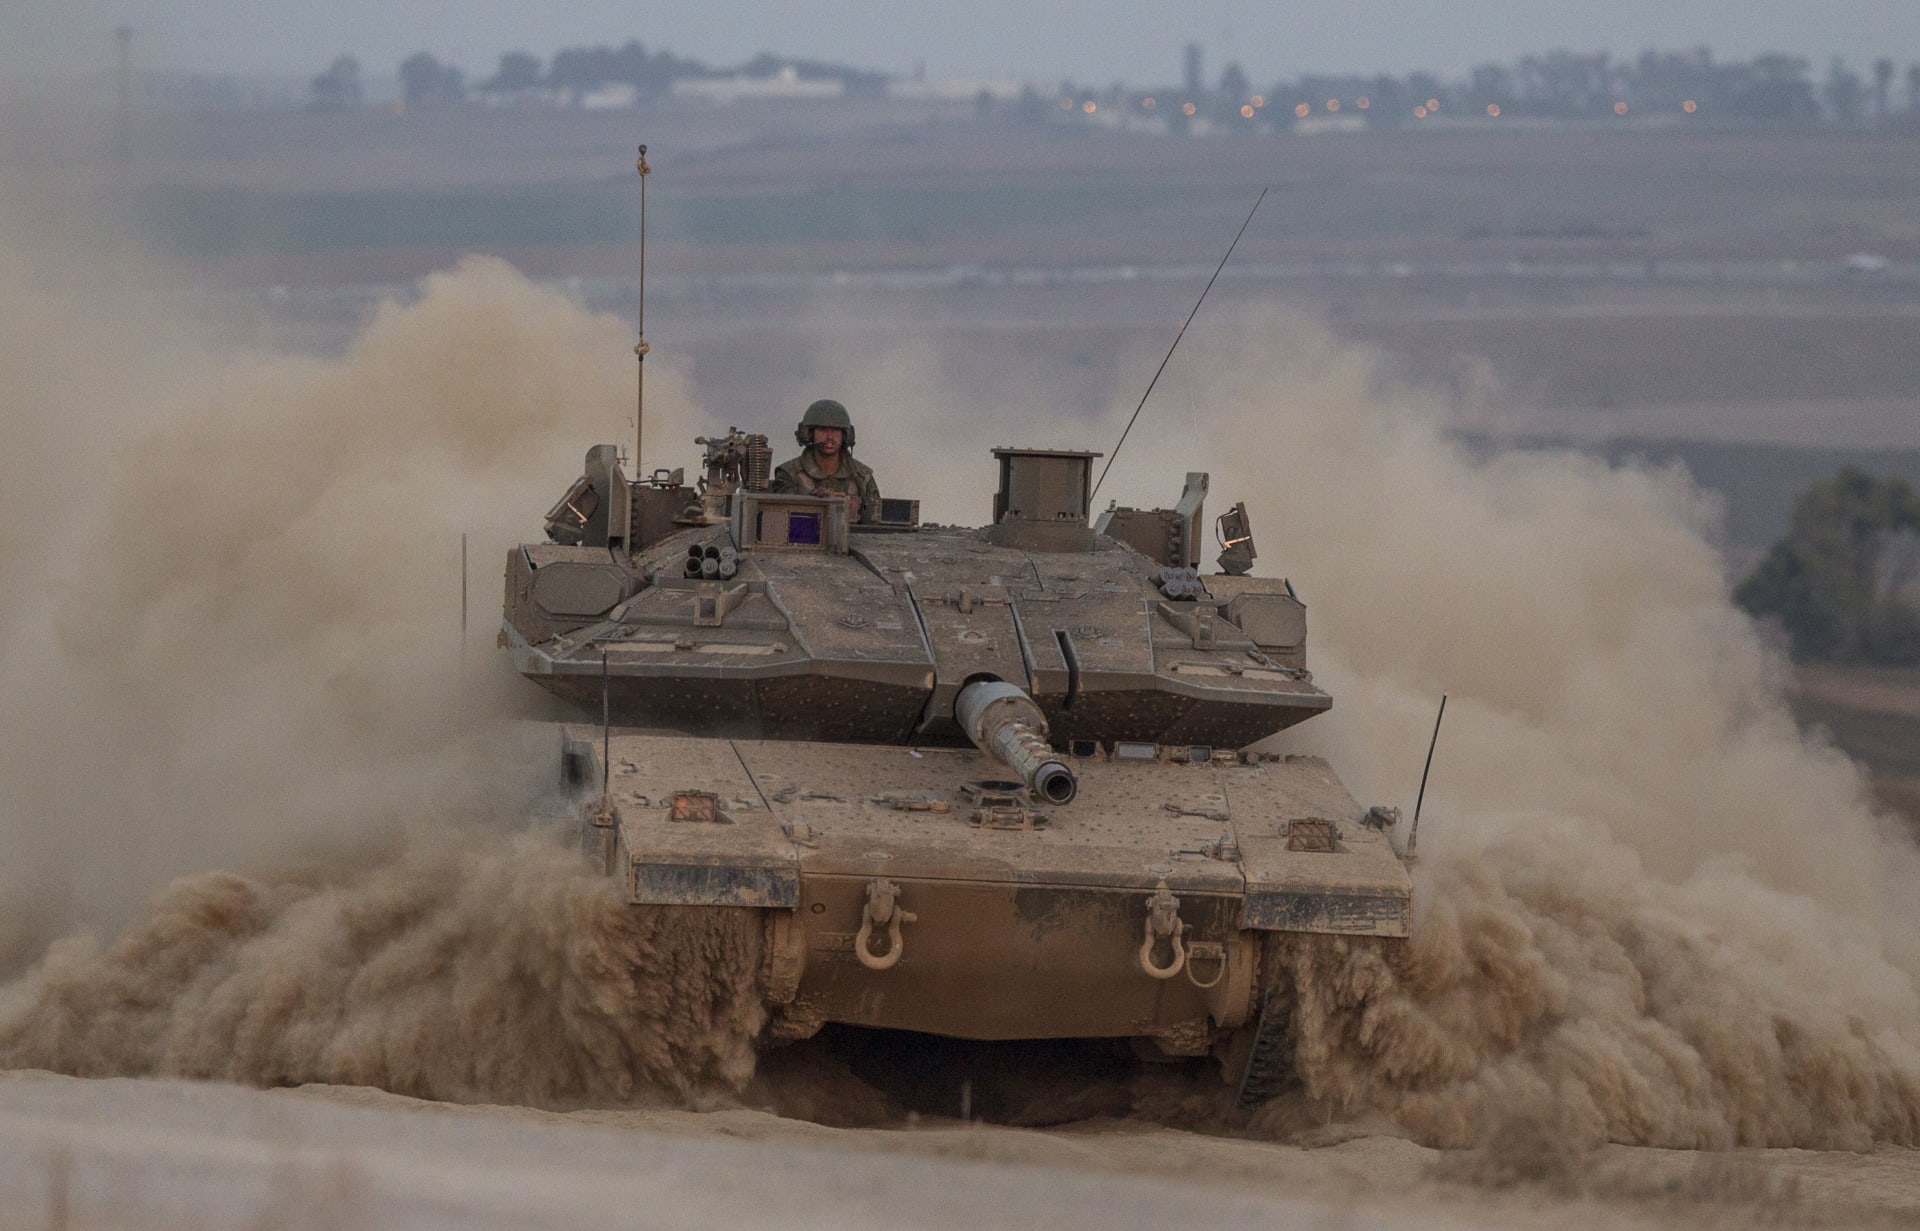 نتنياهو يؤكد مواصلة العمليات بغزة وحماس تلوح بـ"عبور الحدود" في المعركة المقبلة